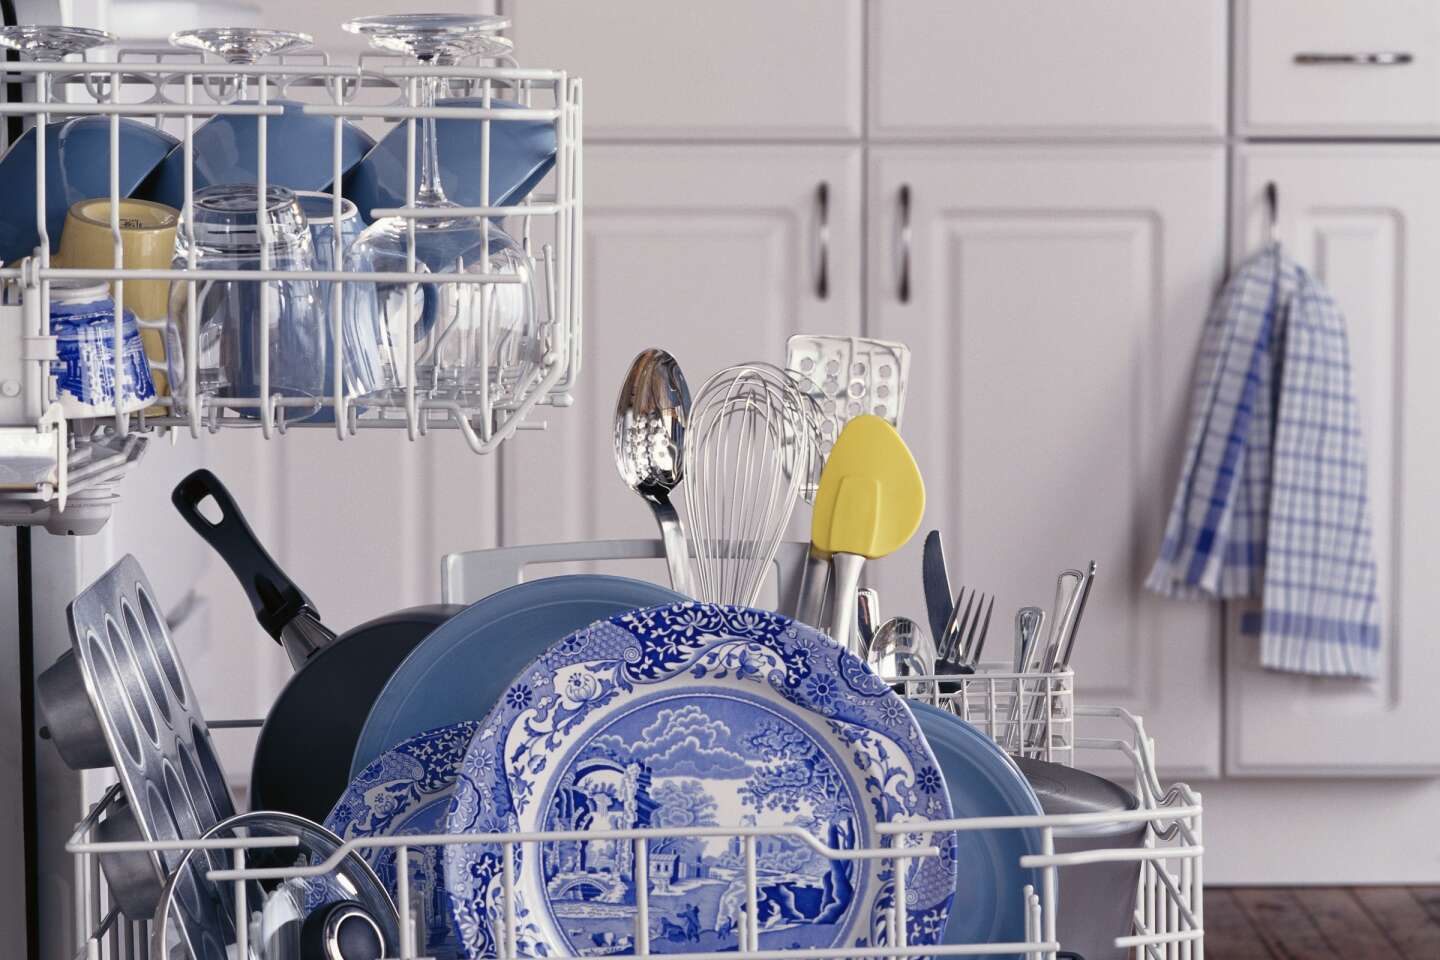 Lave-vaisselle : dans quel sens faut-il ranger les couteaux ?